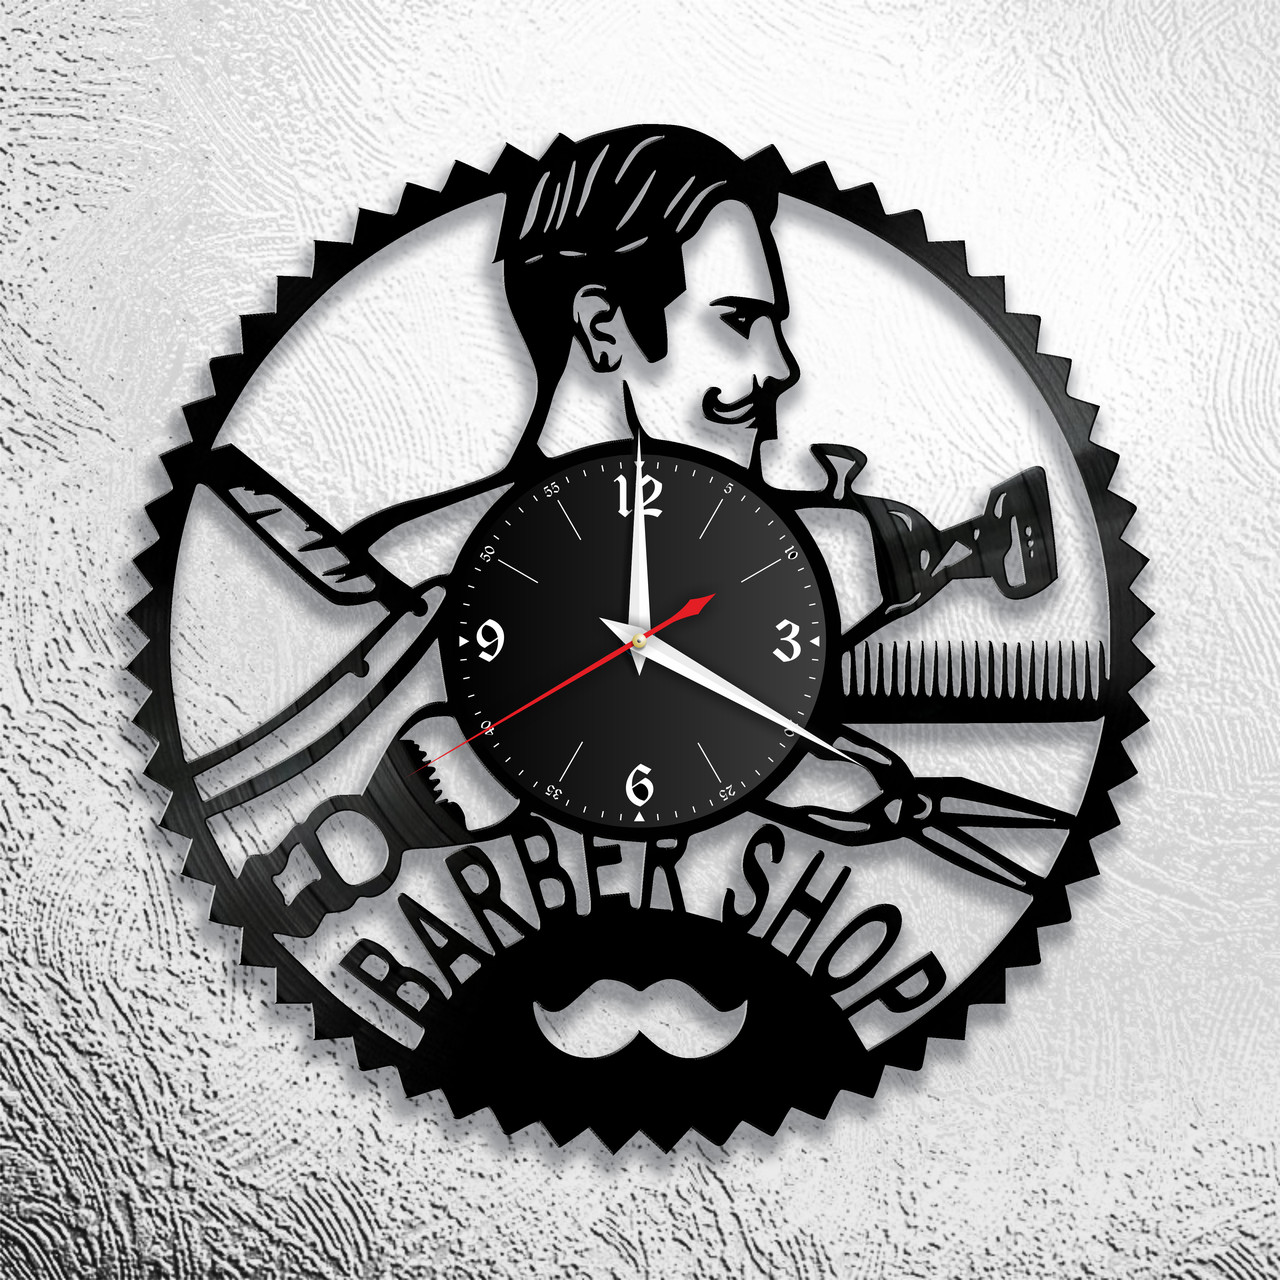 Оригинальные часы из виниловых пластинок "Парикмахерская" версия 14 барбершоп